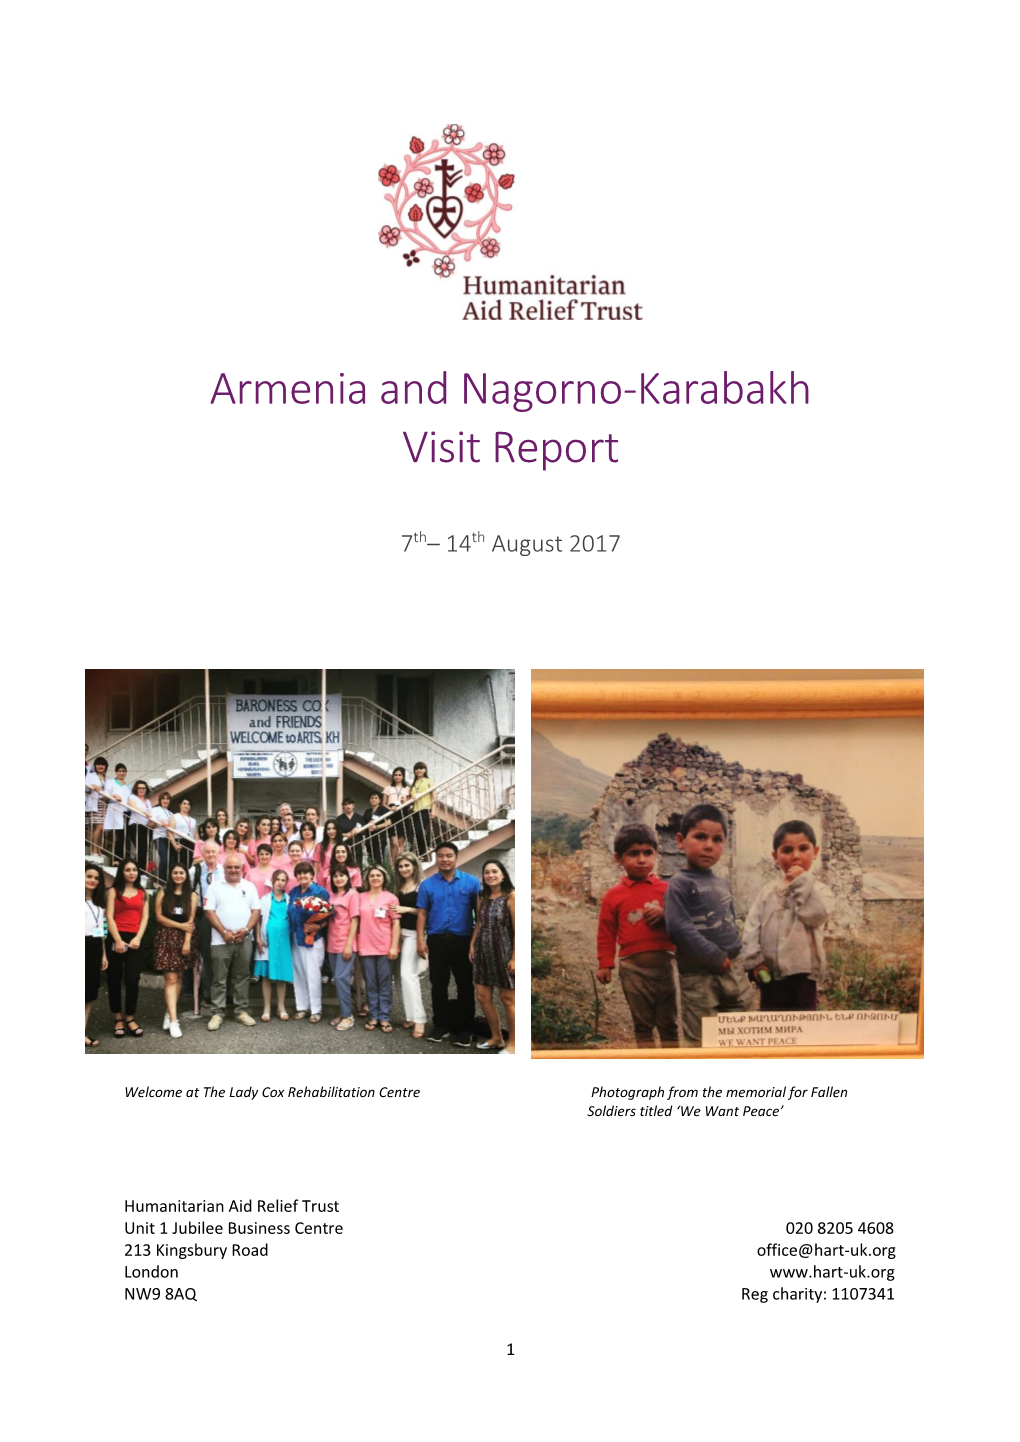 Armenia and Nagorno-Karabakh Visit Report